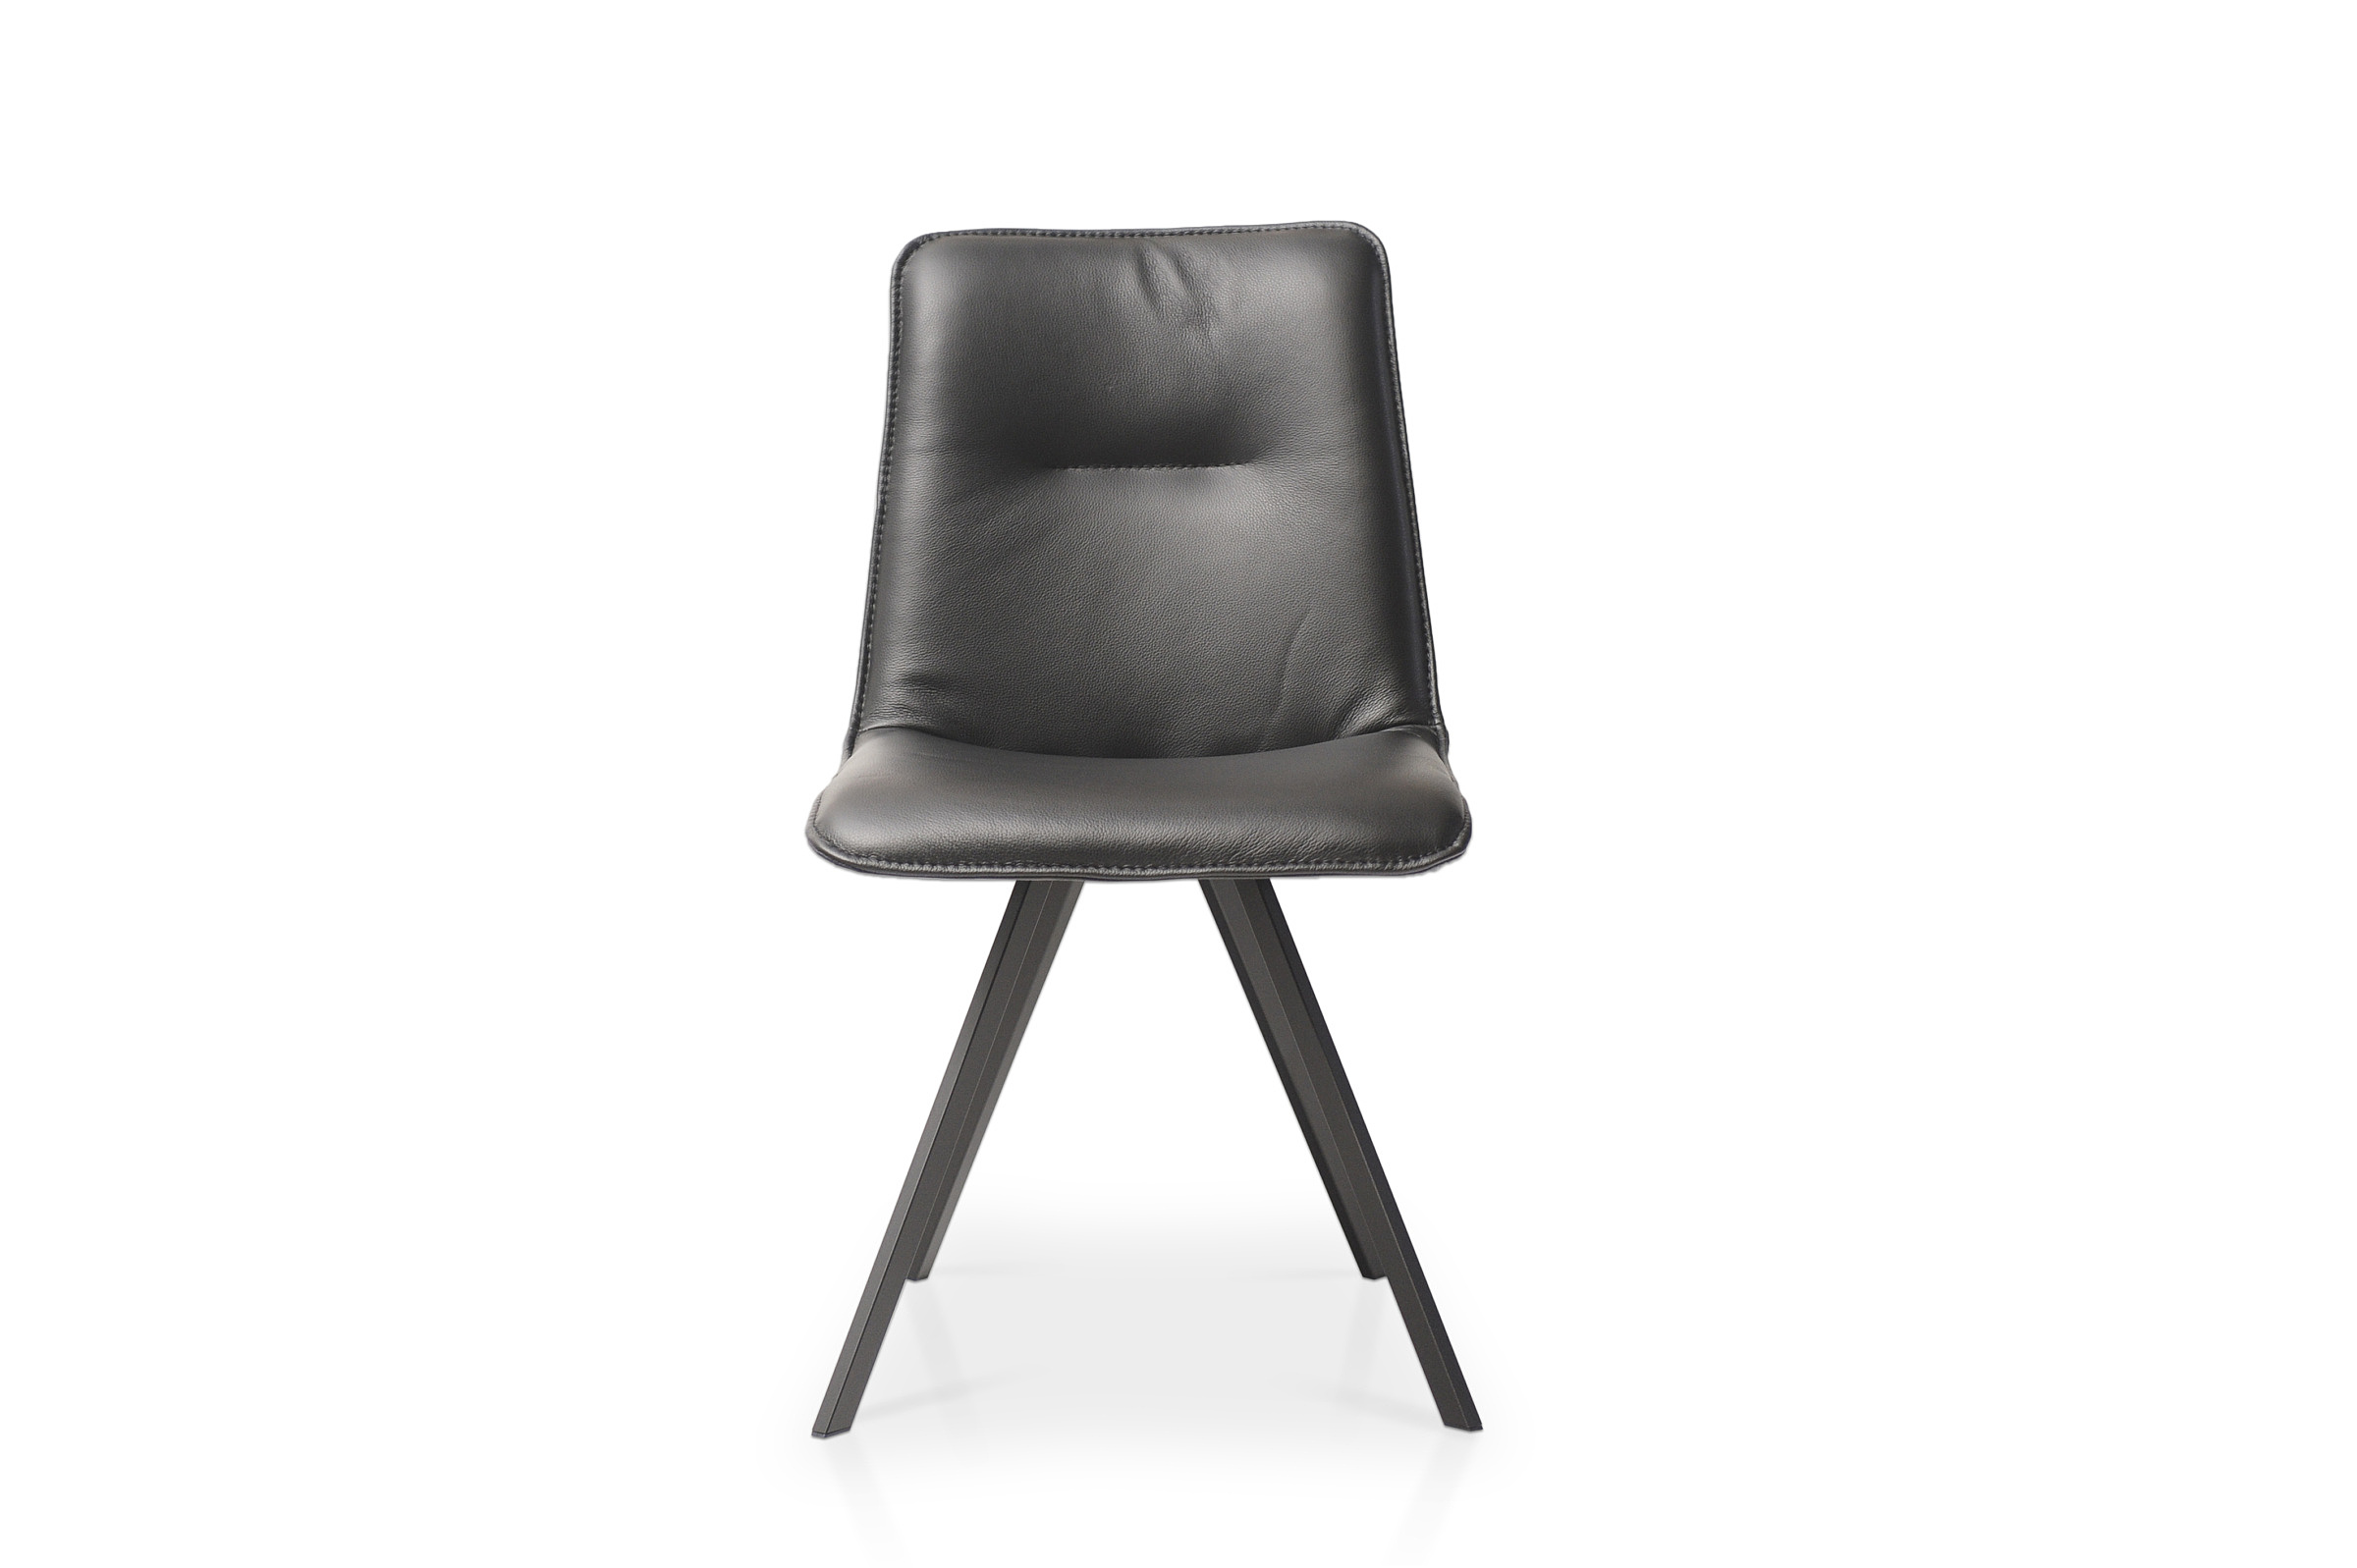 K-09 skórzane krzesło czarne na metalowej nodze klasyk loft mocne